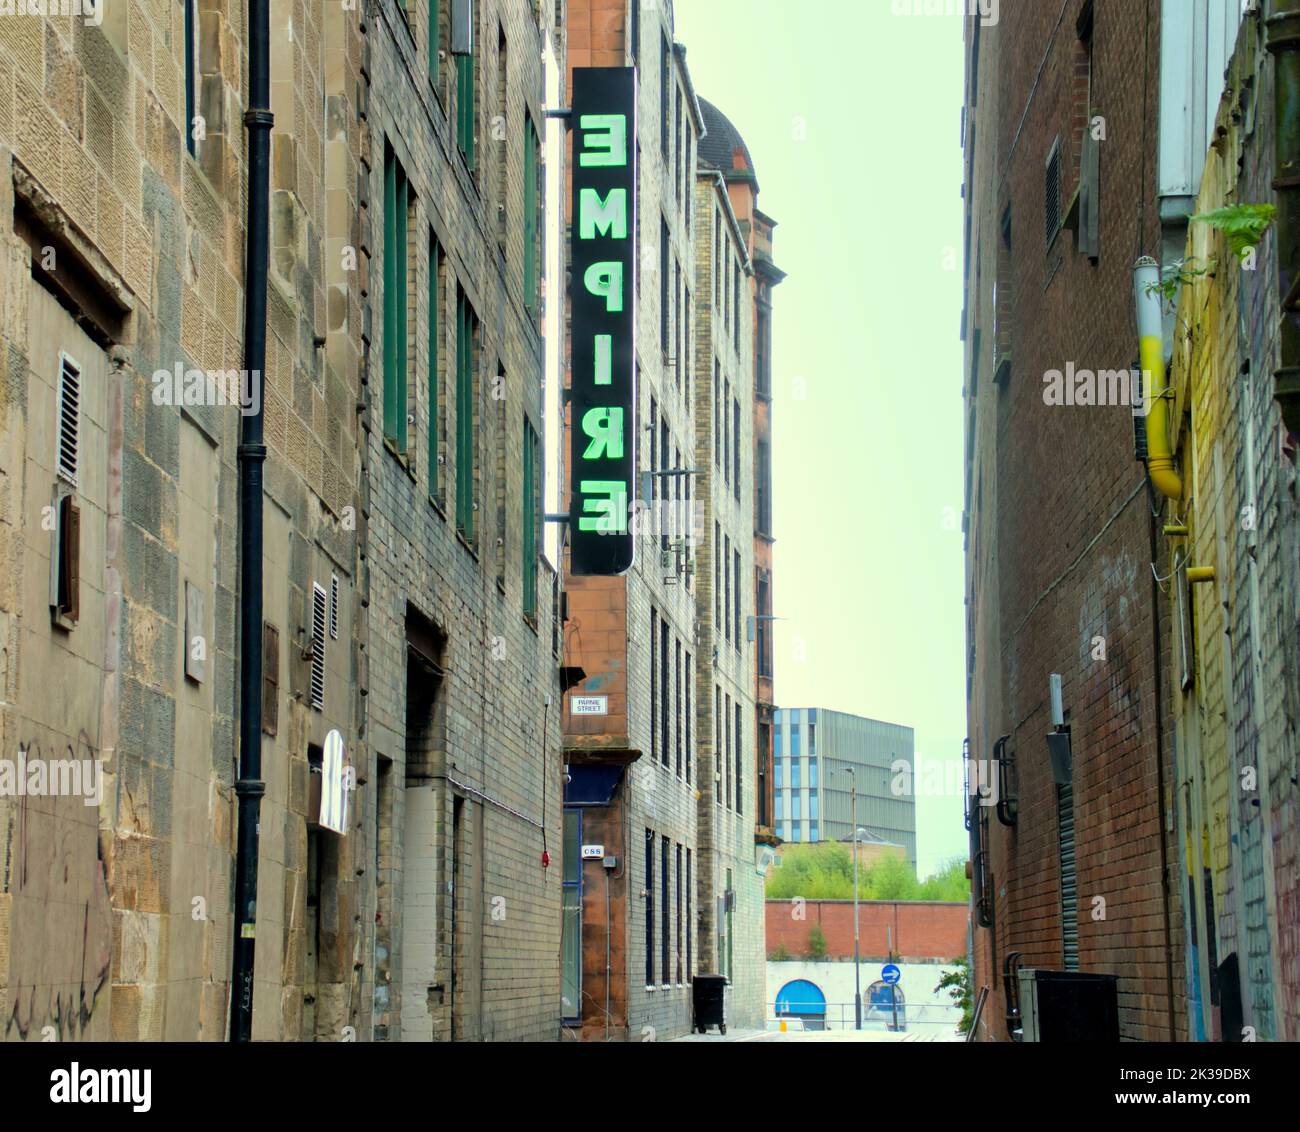 El ganador del premio Turner, Douglas Gordon's Neon Empire, se registra en una nueva ubicación en el New Wynd Glasgow, Escocia, Reino Unido Foto de stock